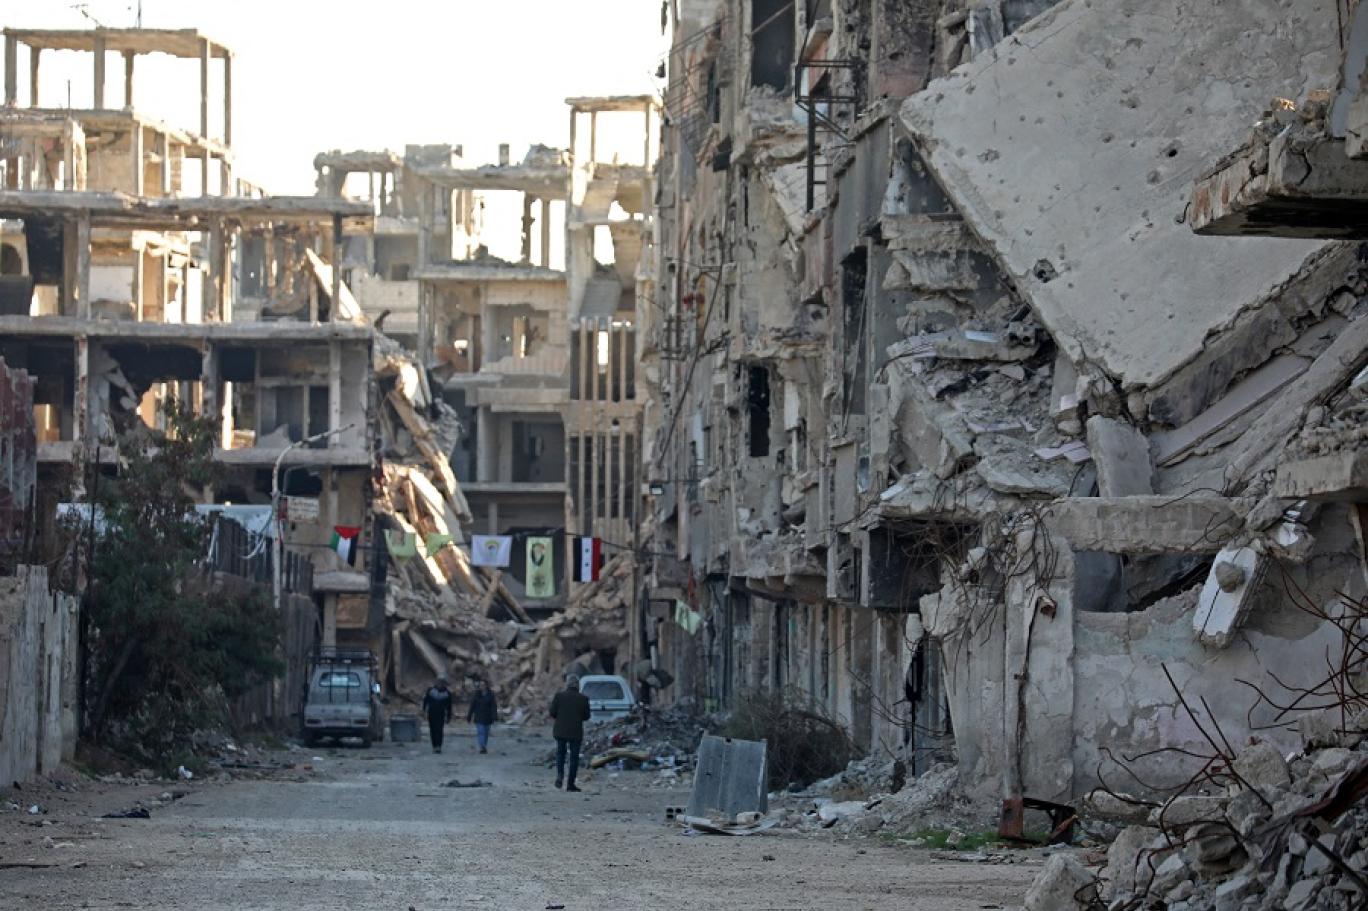 سوريا: حرب جامدة بلا حسم وأزمة داخلية وخارجية هامدة | اندبندنت عربية